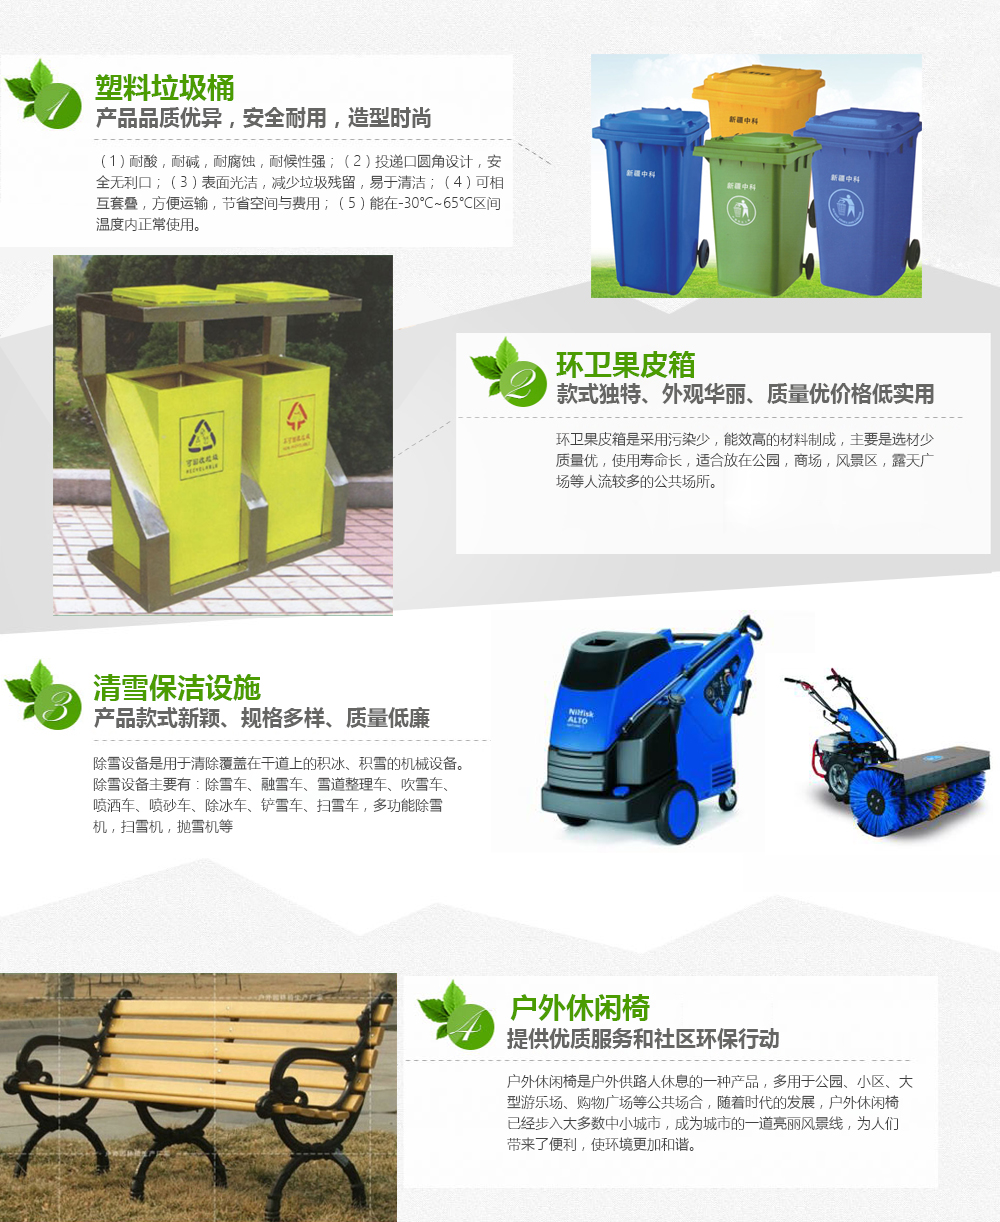 新疆环卫垃圾桶有哪些盛放形式呢